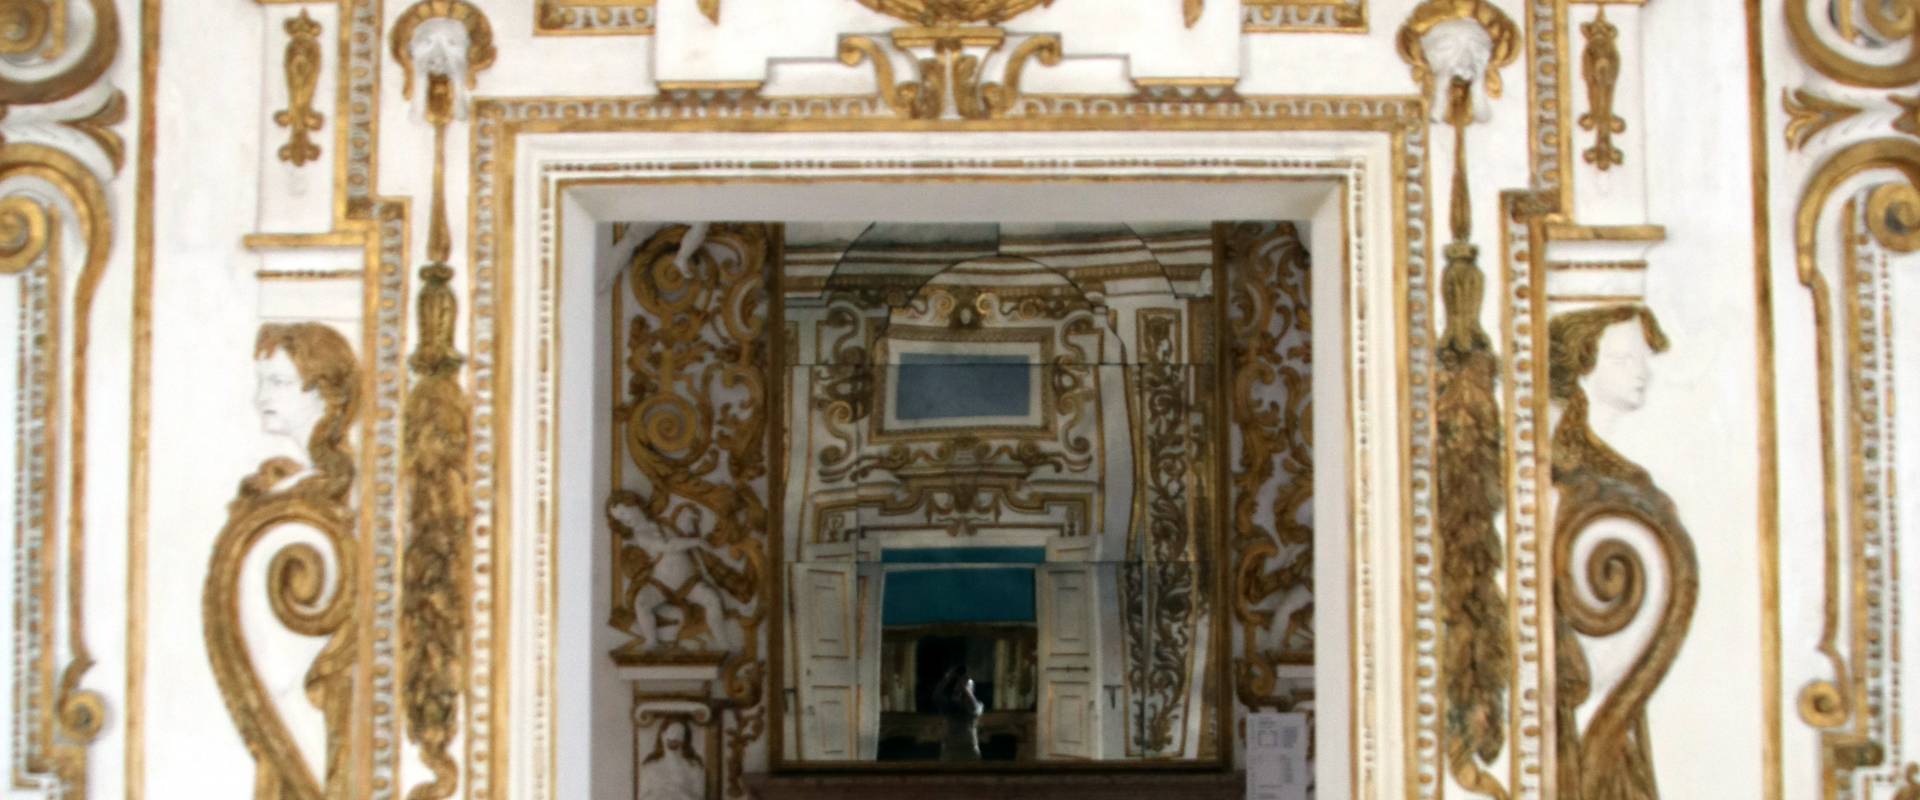 Palazzo Ducale (Sassuolo), Camera della Magia o degli Incanti 06 foto di Mongolo1984